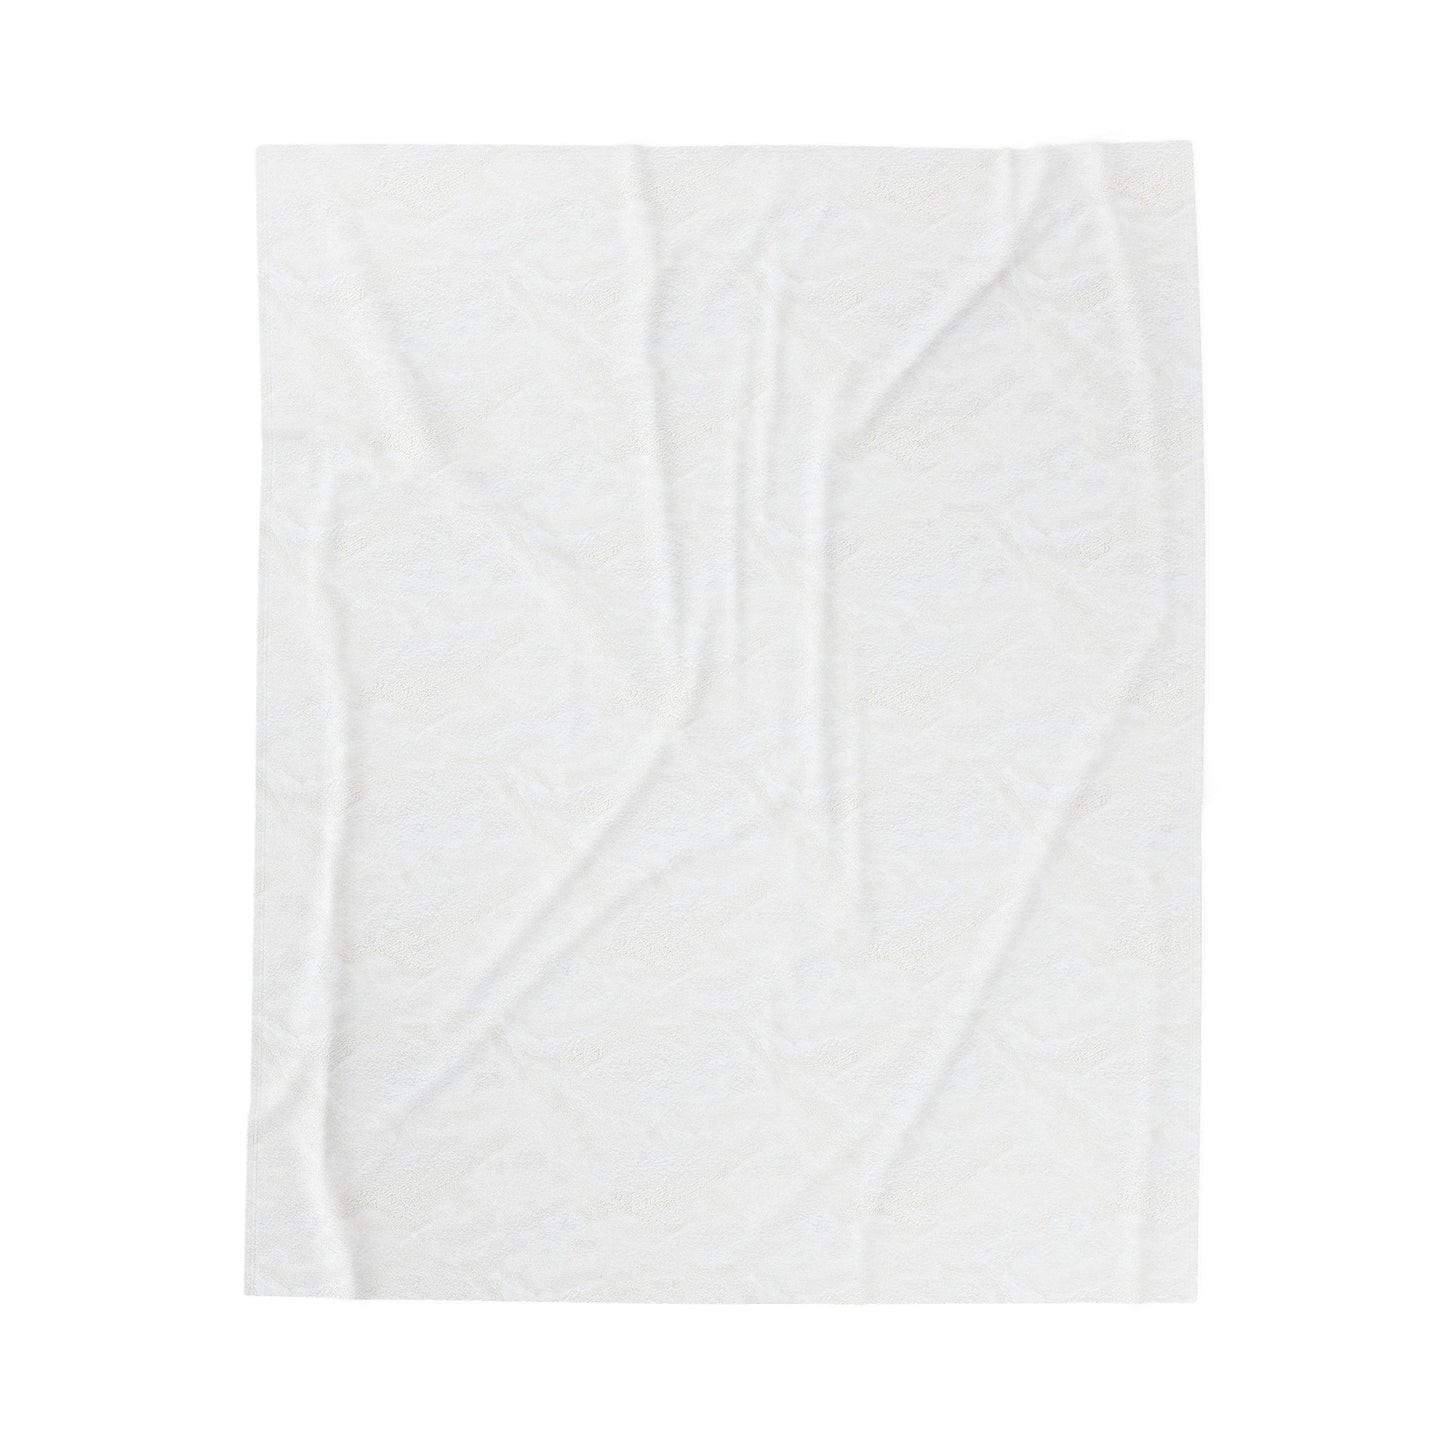 Aura Soulful - Plush Blanket-Plush Blankets-Mr.Zao - Krazy Art Gallery